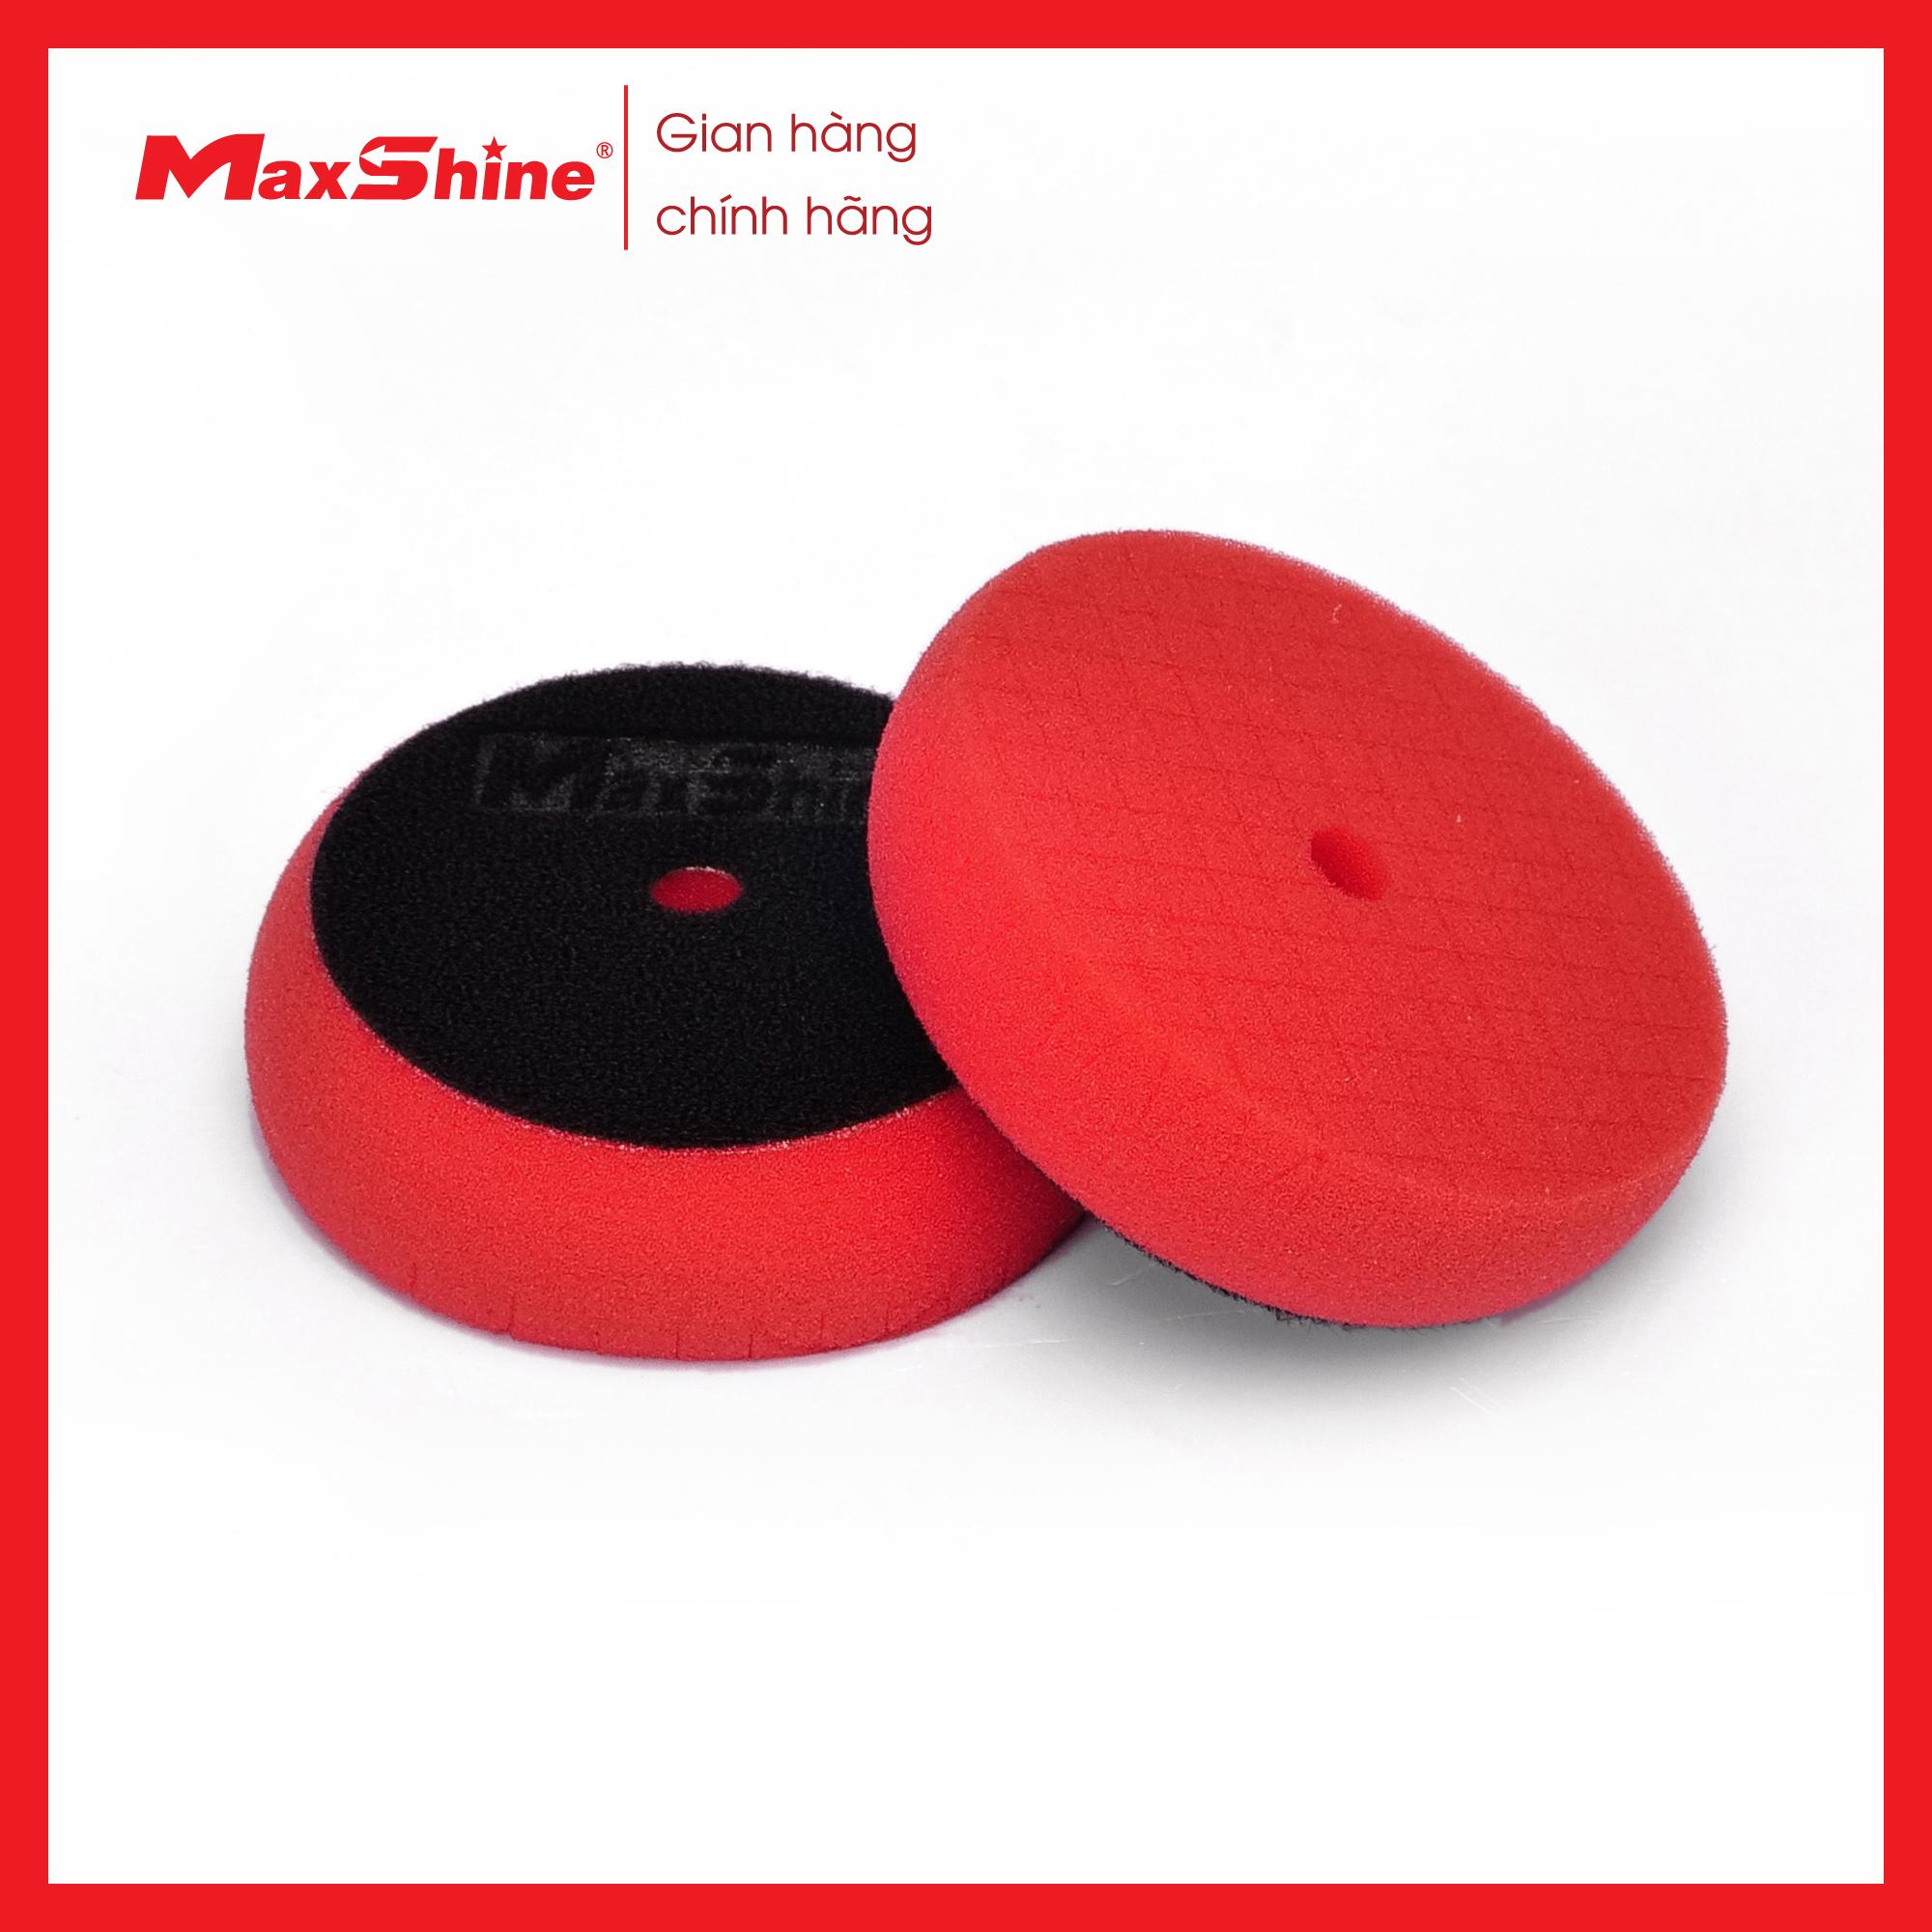 Phớt xốp/mút đánh bóng caro bước 3 kích thước 3 inch Maxshine 2003090R được làm từ xốp mềm màu đỏ, cắt chéo bề mặt, chống ăn mòn với hóa chất.